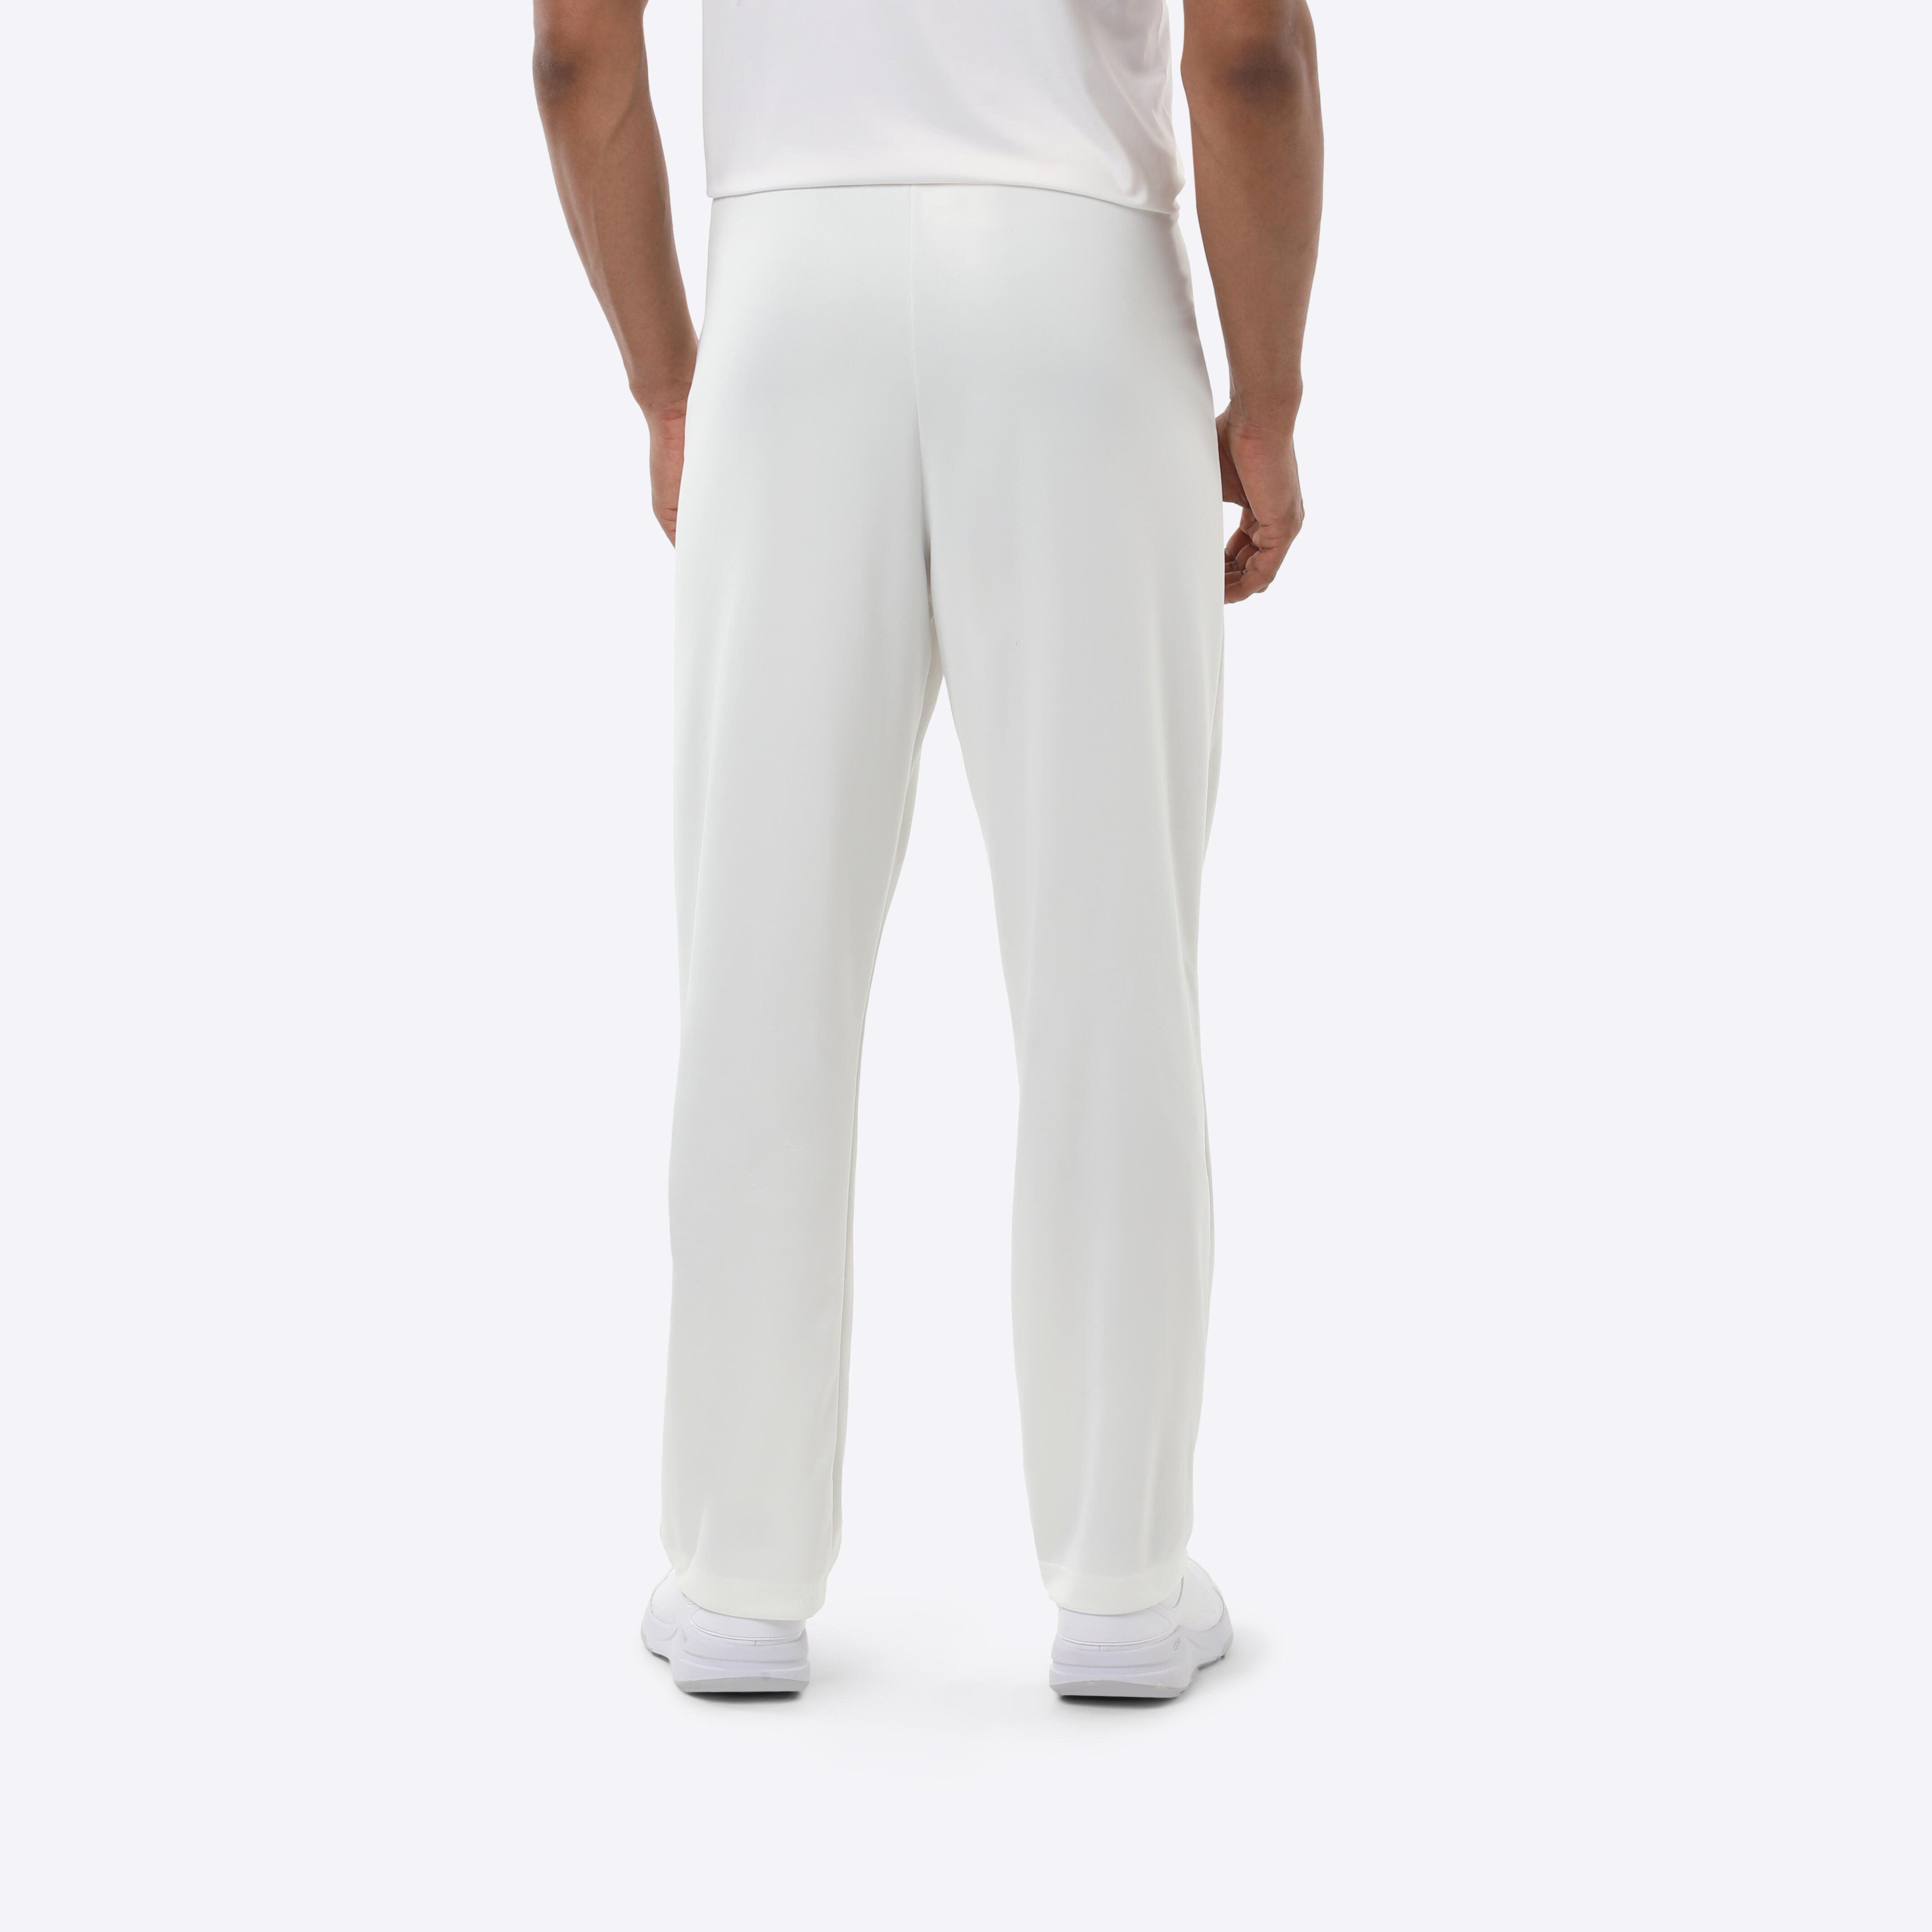 Mens Cricket Whites  Clothing  ProDirect Cricket